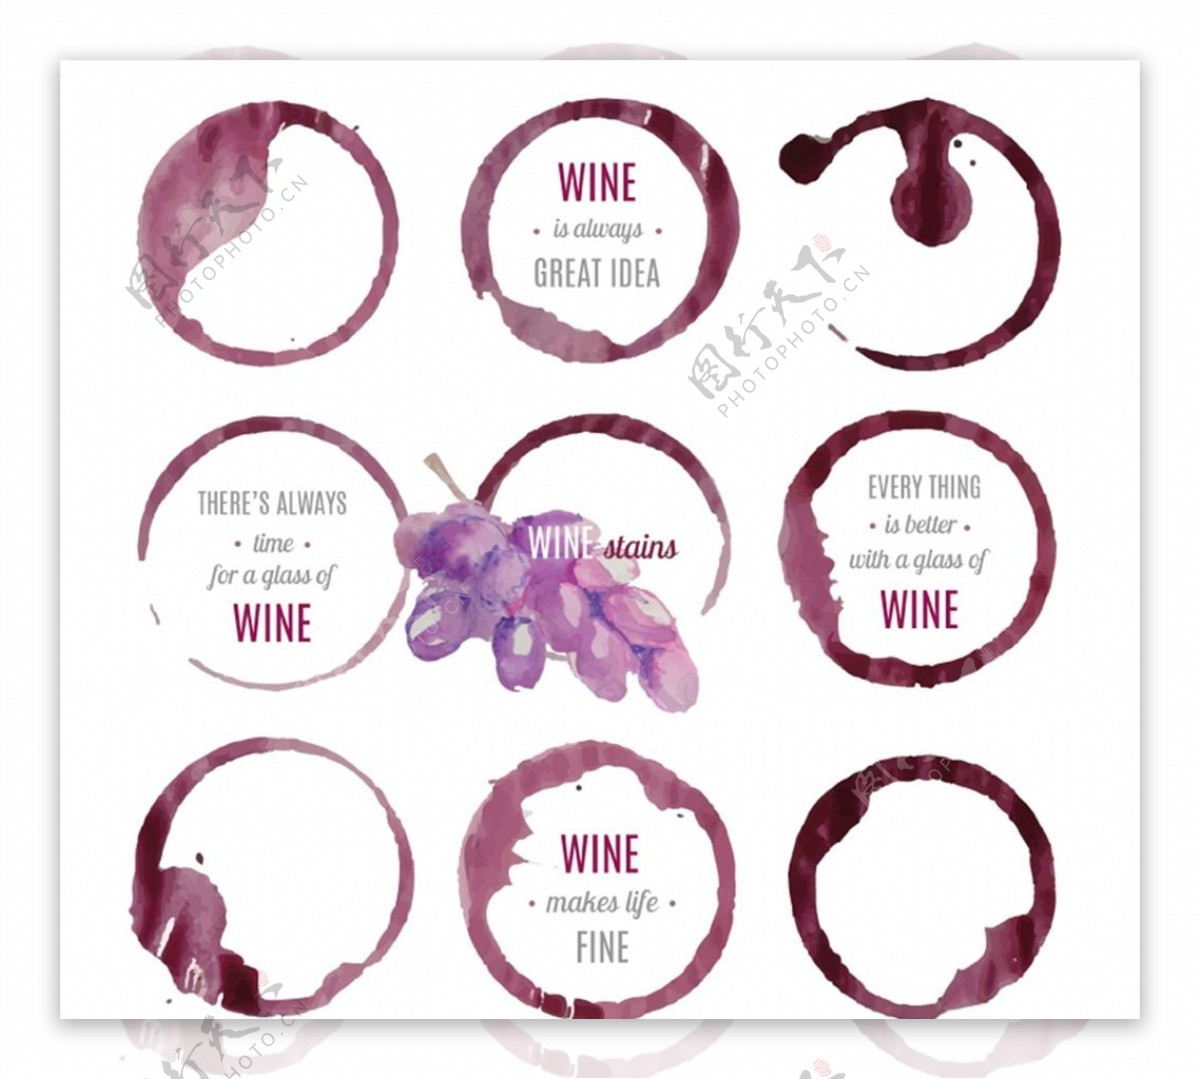 葡萄酒标签矢量图片